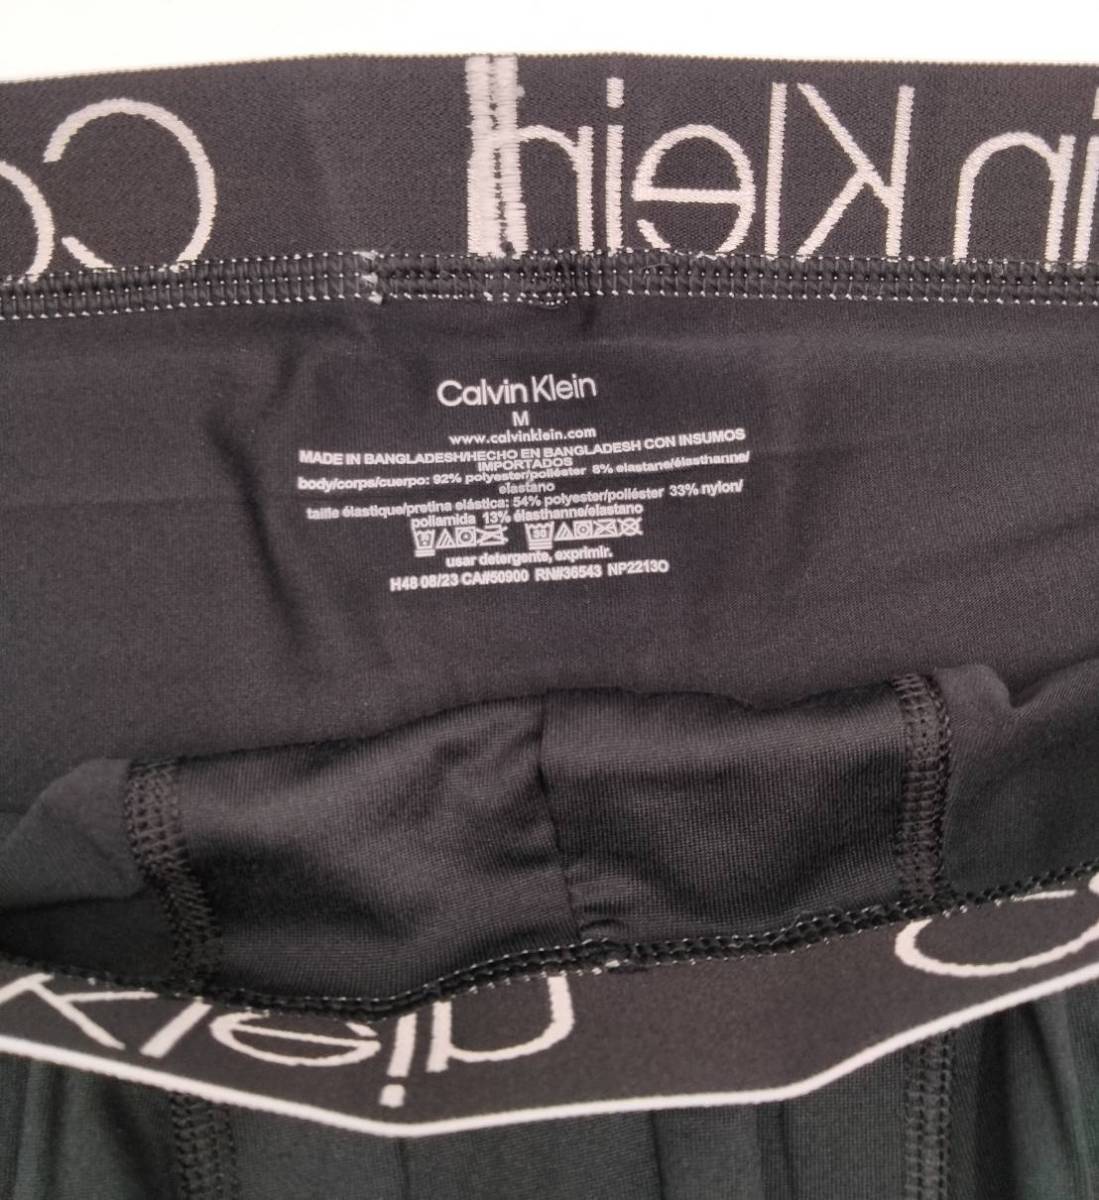 【Mサイズ】Calvin Klein(カルバンクライン) ボクサーパンツ ブラック 1枚 メンズボクサーパンツ 男性下着 NP2213O